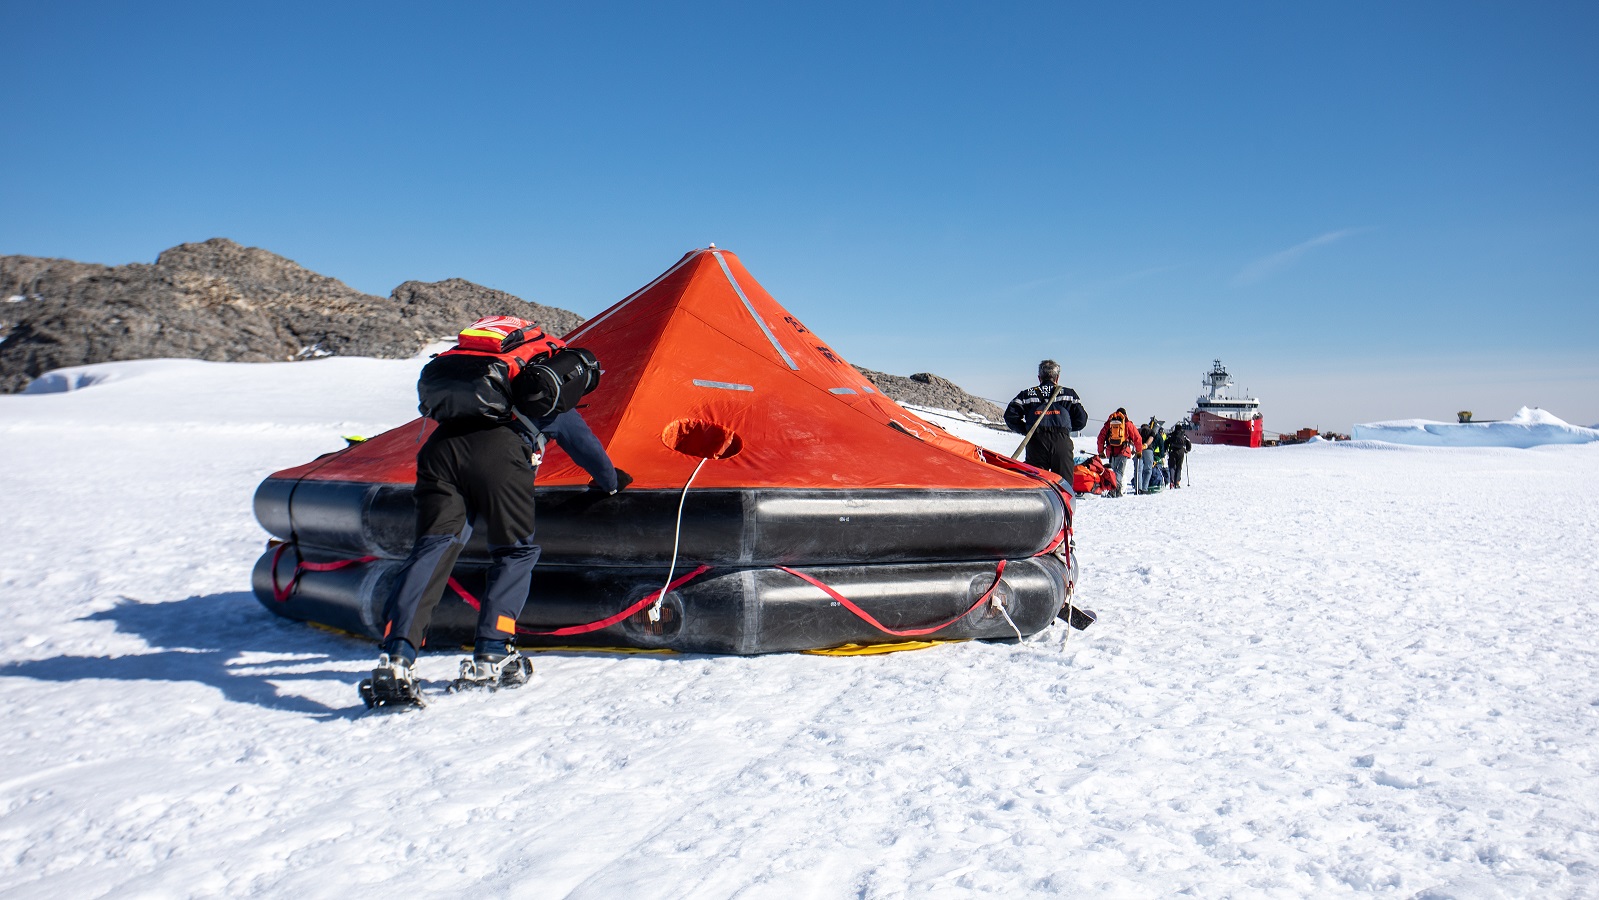  FAZSOI – Le patrouilleur polaire L’Astrolabe conduit un exercice de survie en Antarctique